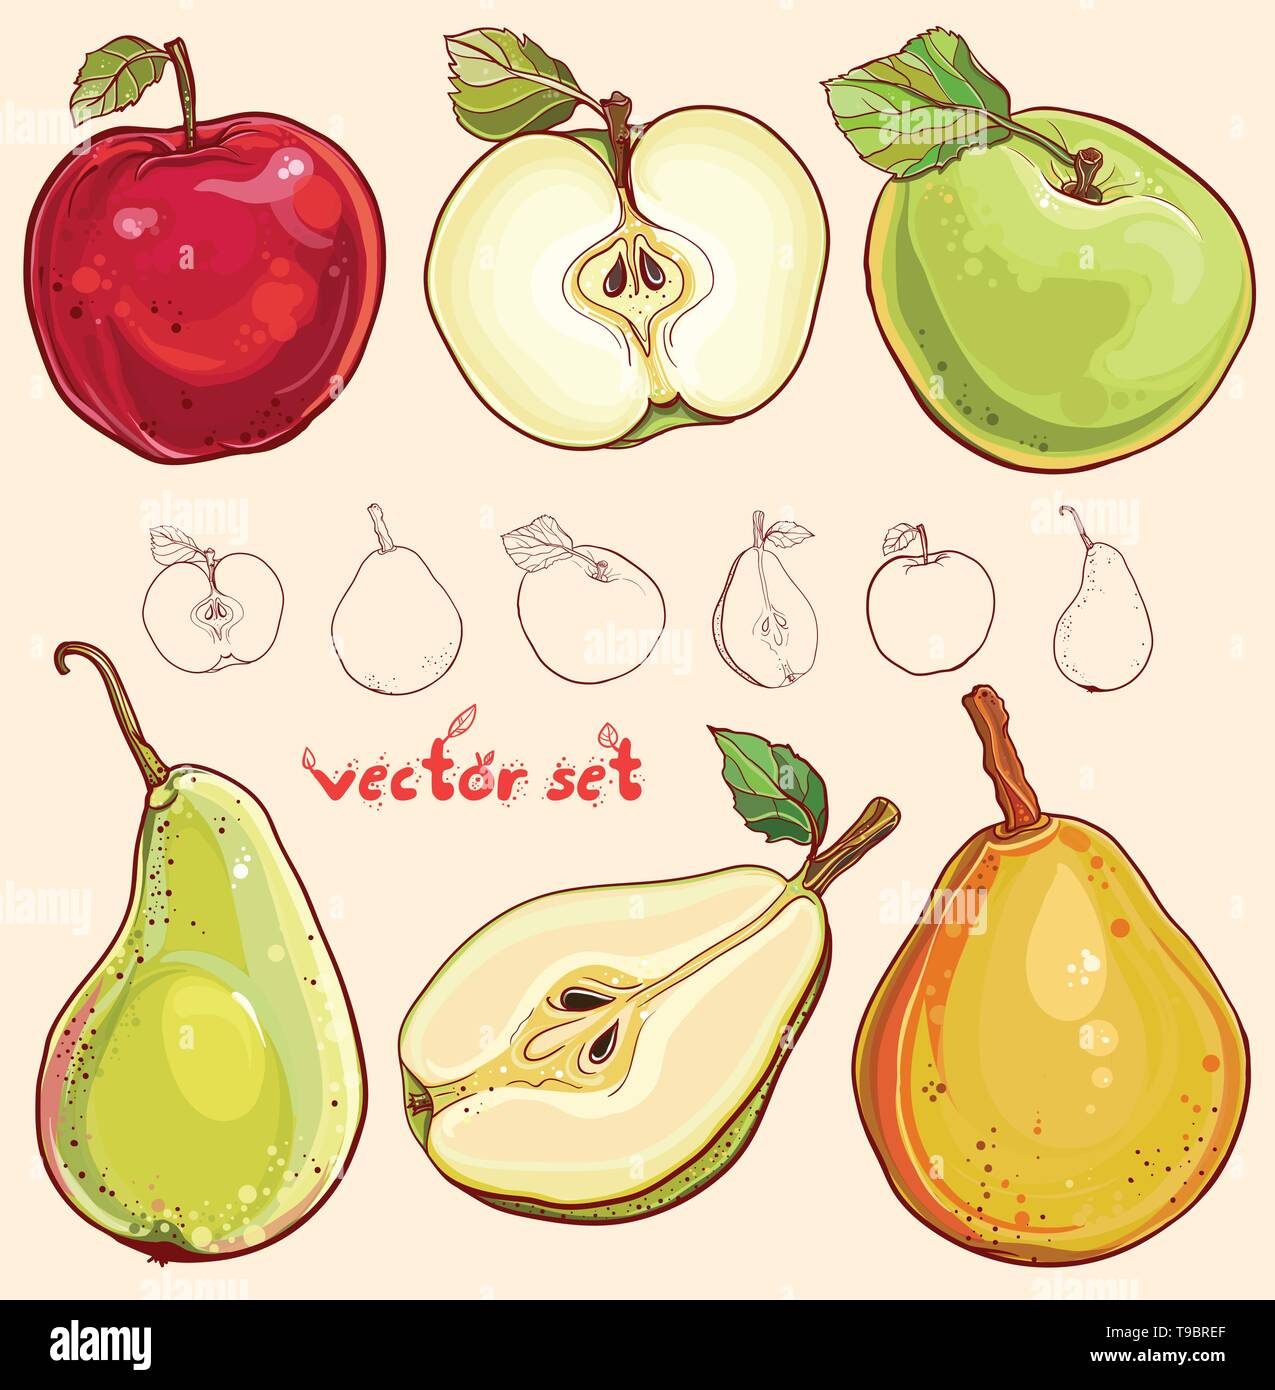 Helle vector Abbildung: frische Äpfel und Birnen. Einzelnen Apfel und Birne, Apfel und Birne, isoliert, farbige und strichzeichnung von Früchten. Stock Vektor